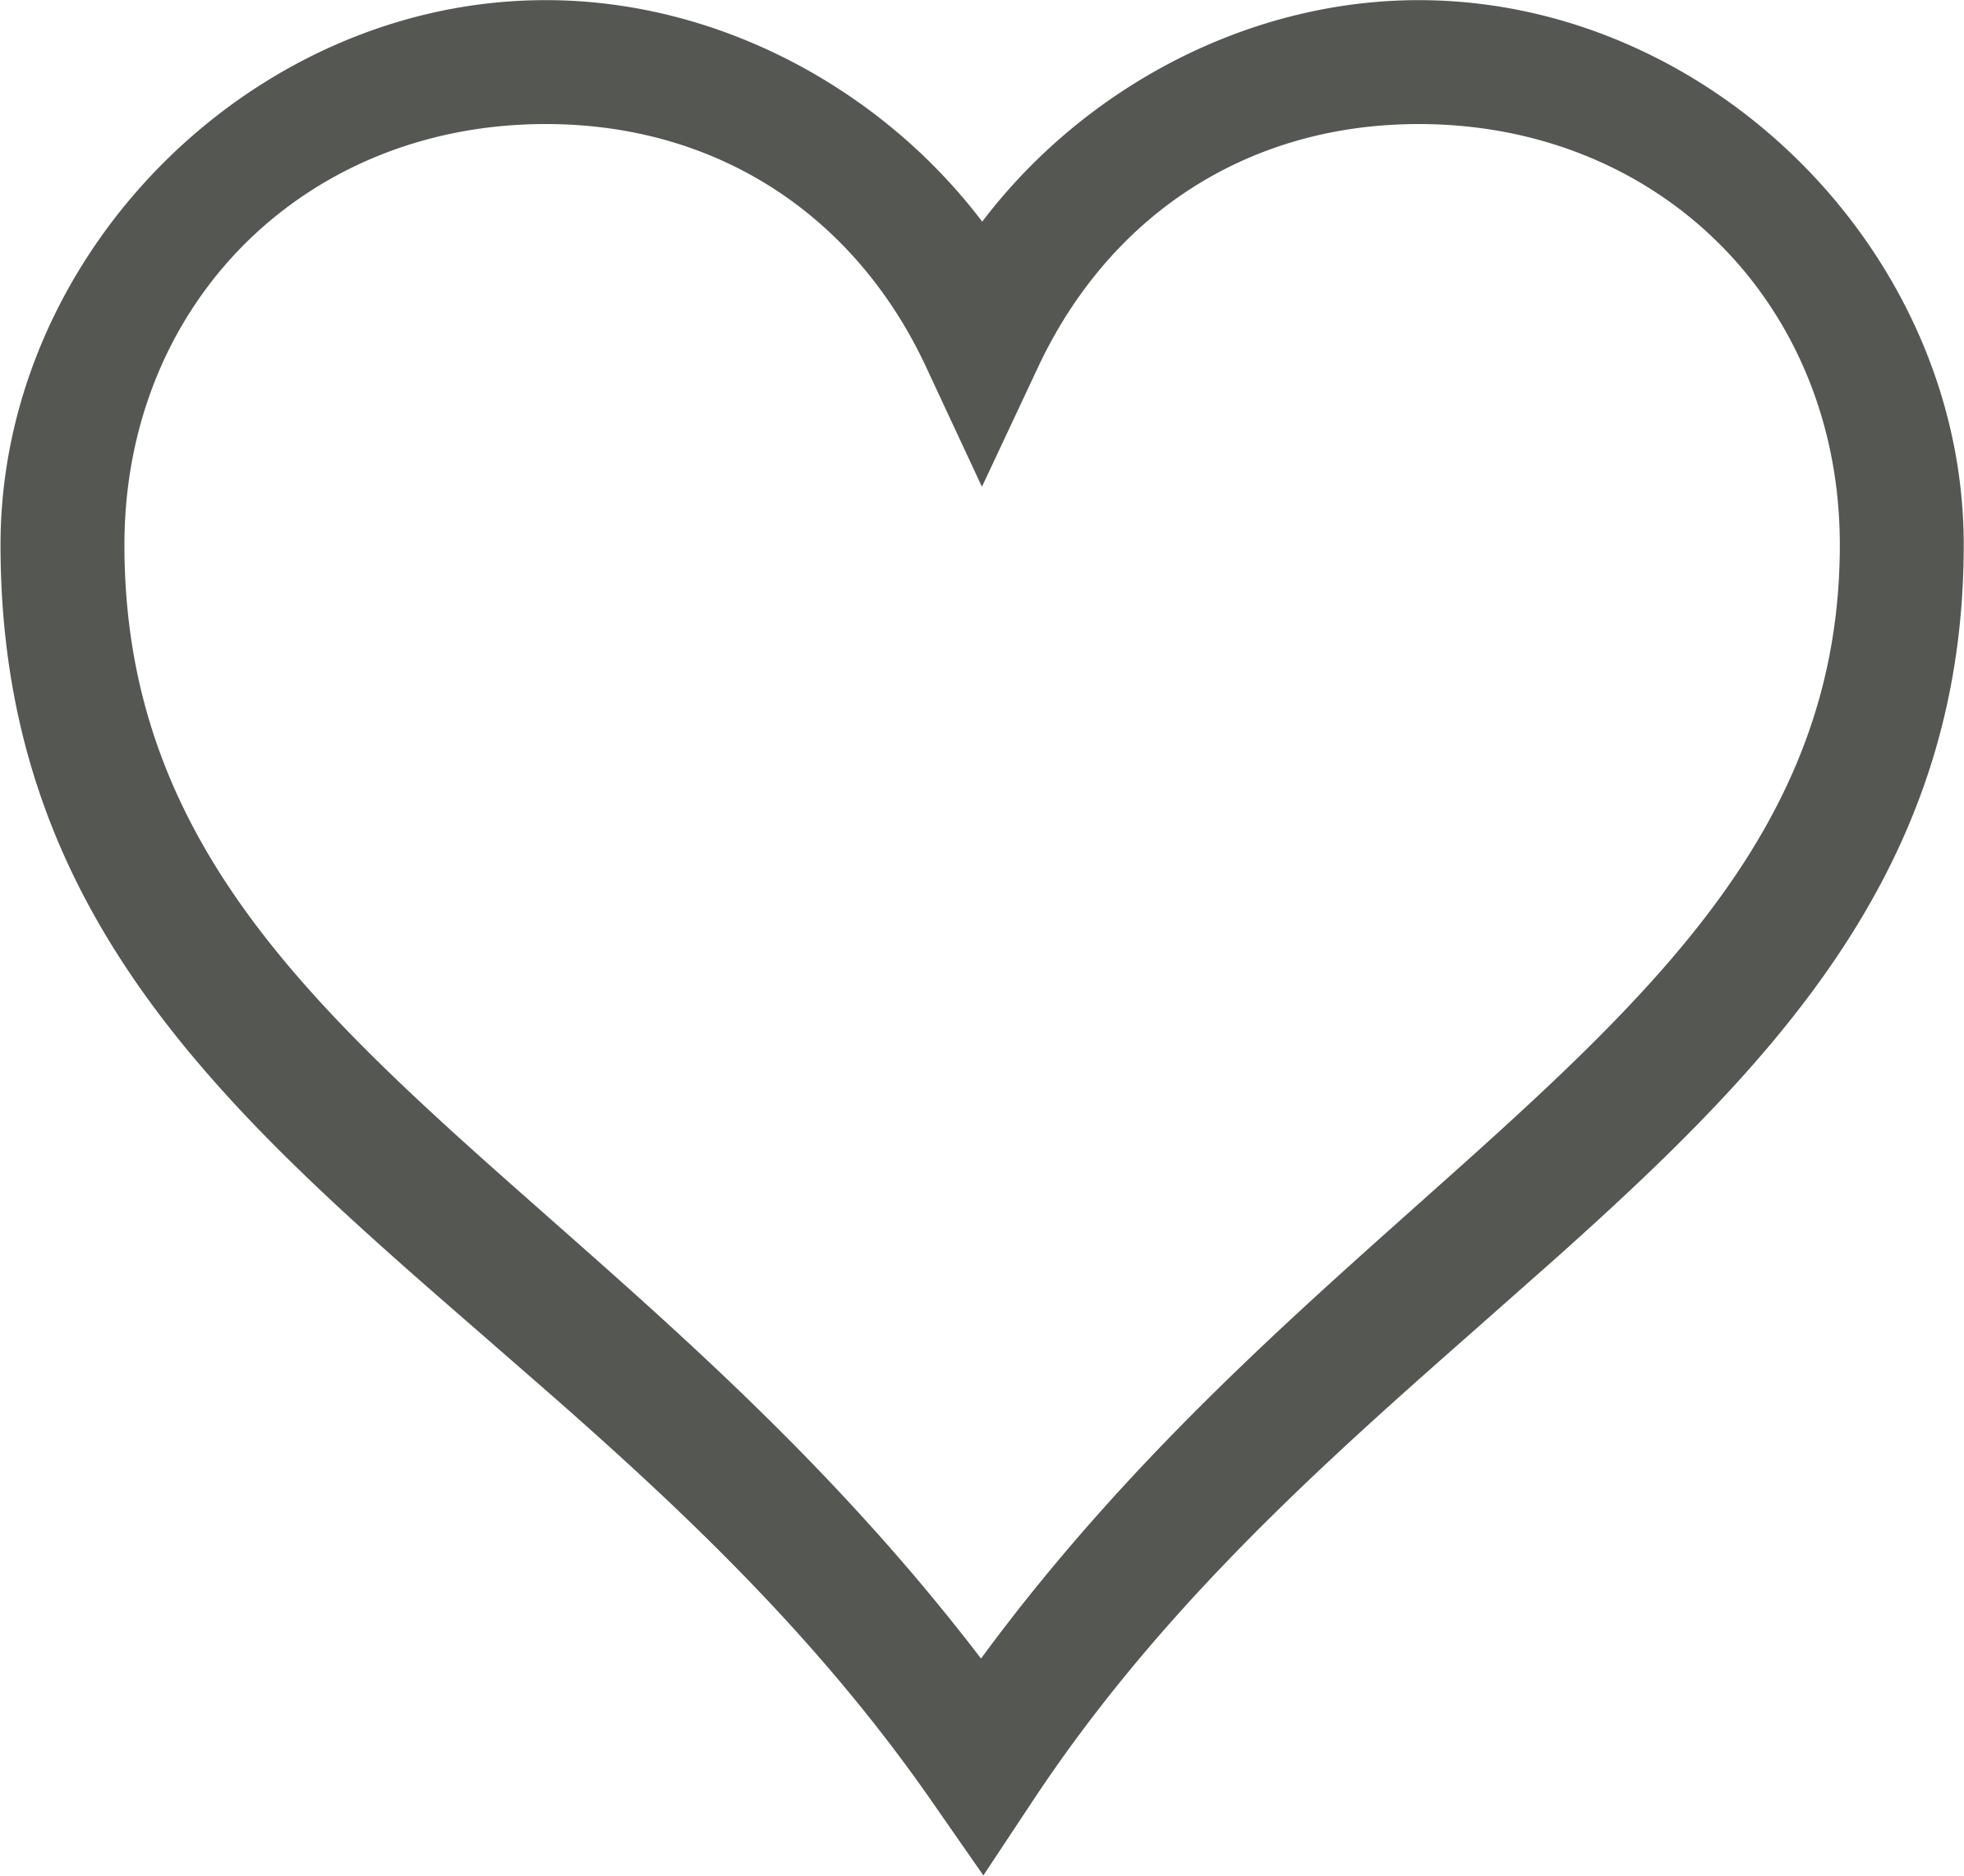 White heart 2 icon - Free white heart icons